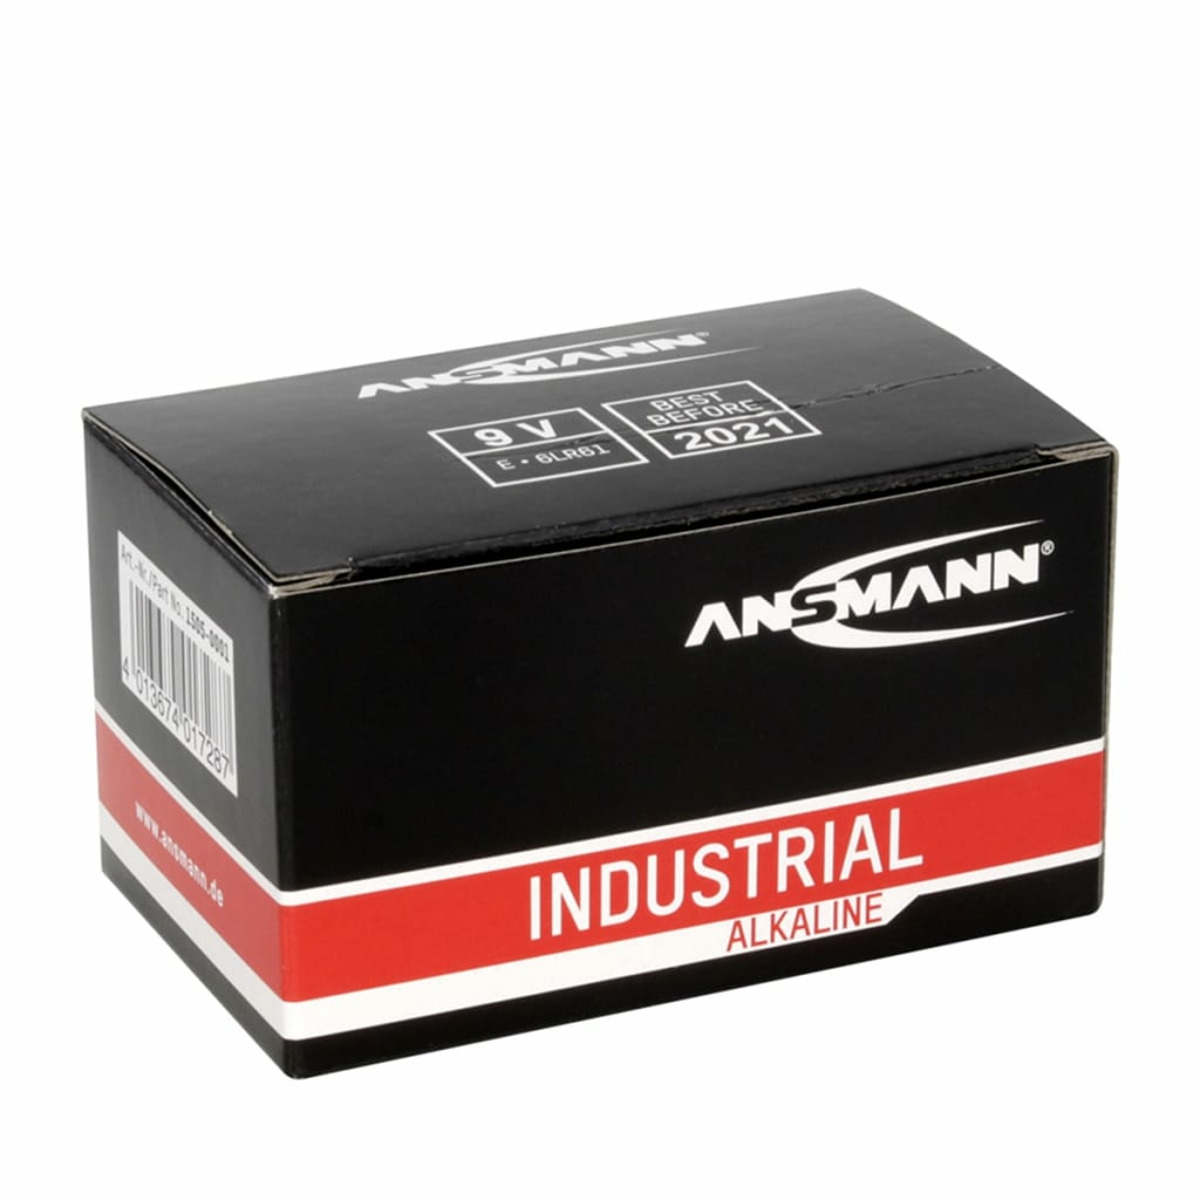 ANSMANN 413398 Alkaline Industriebatterie